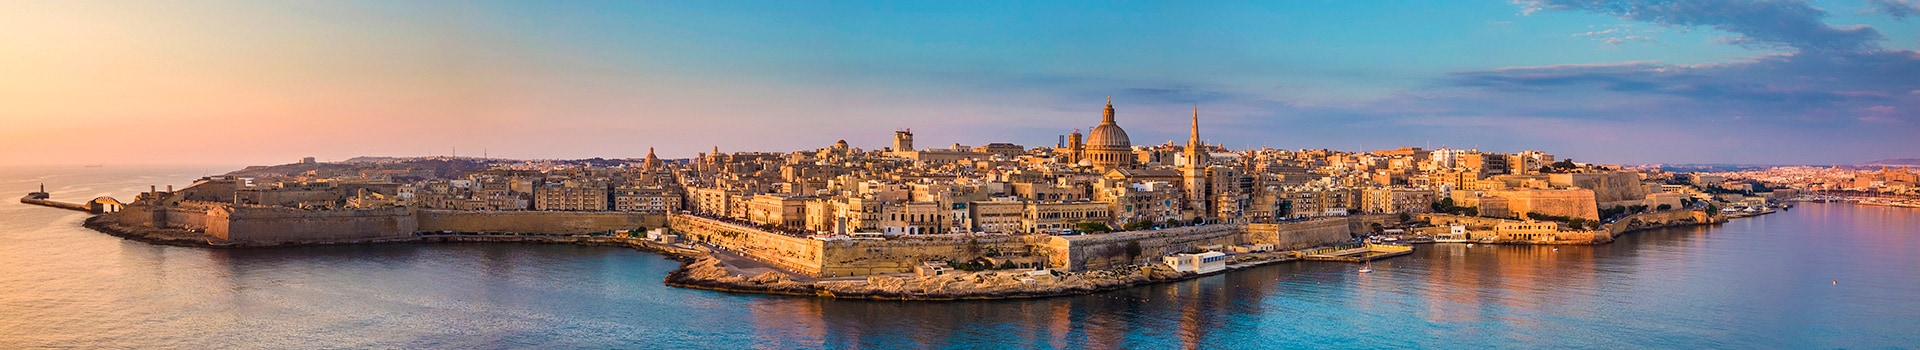 Rooma - Malta